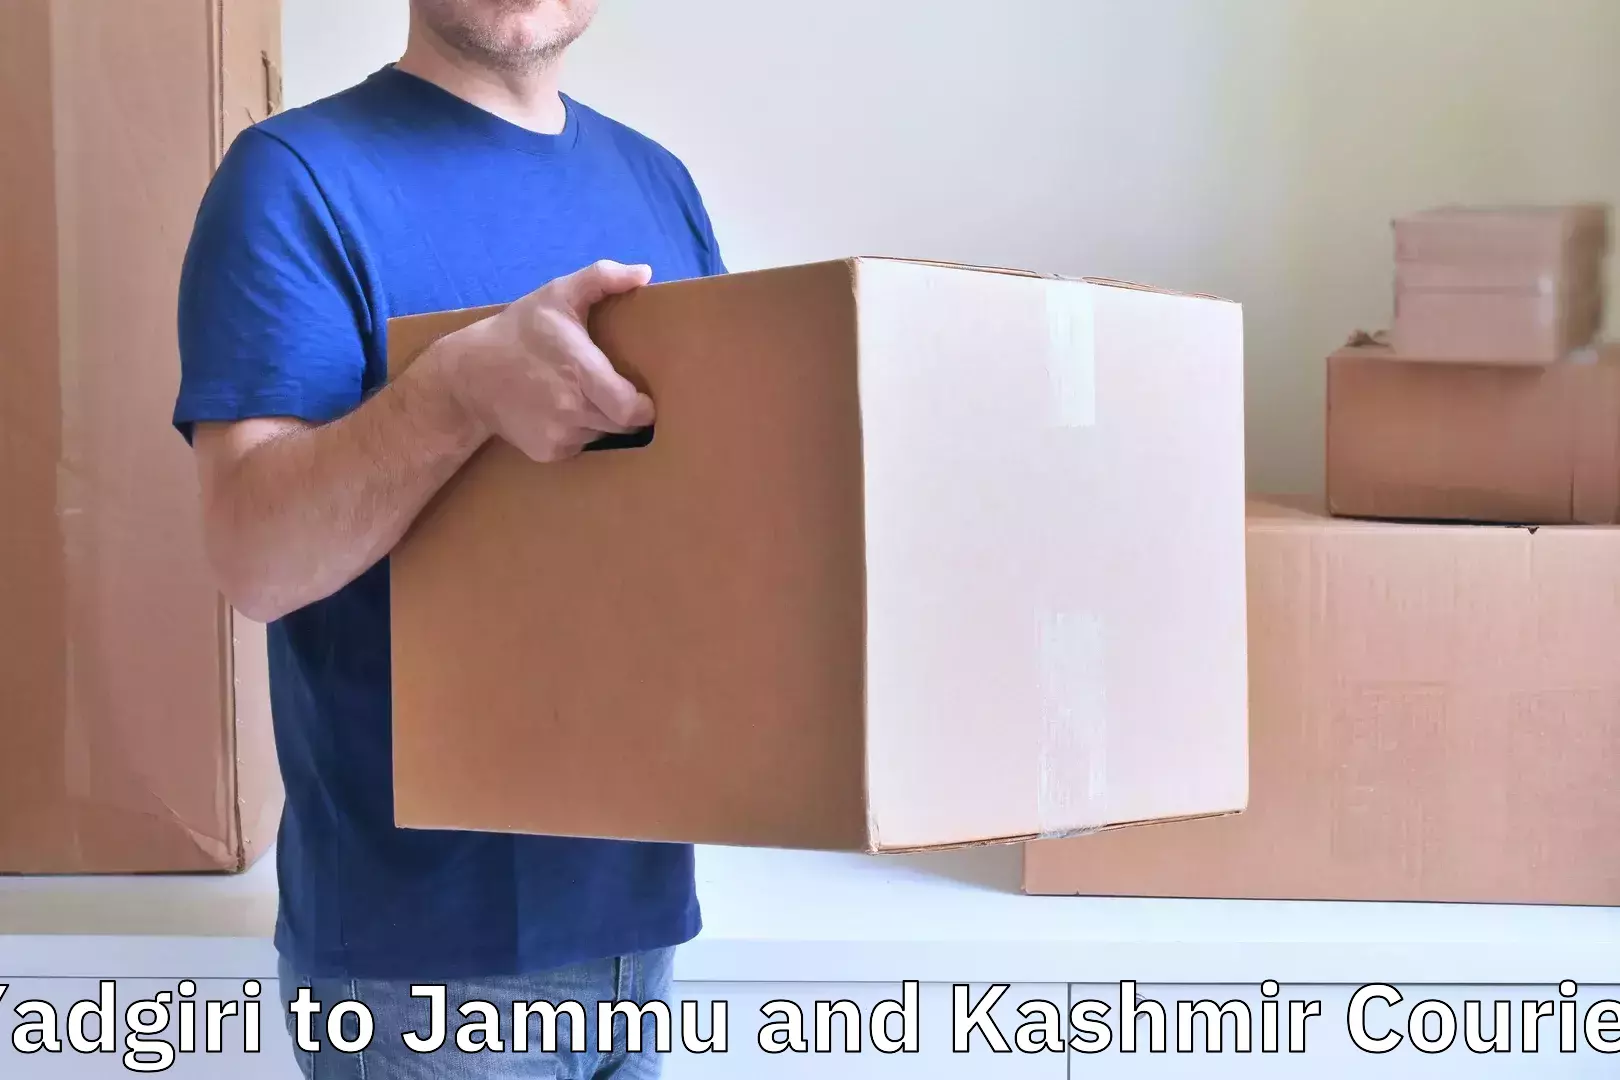 Luggage transport solutions Yadgiri to Srinagar Kashmir